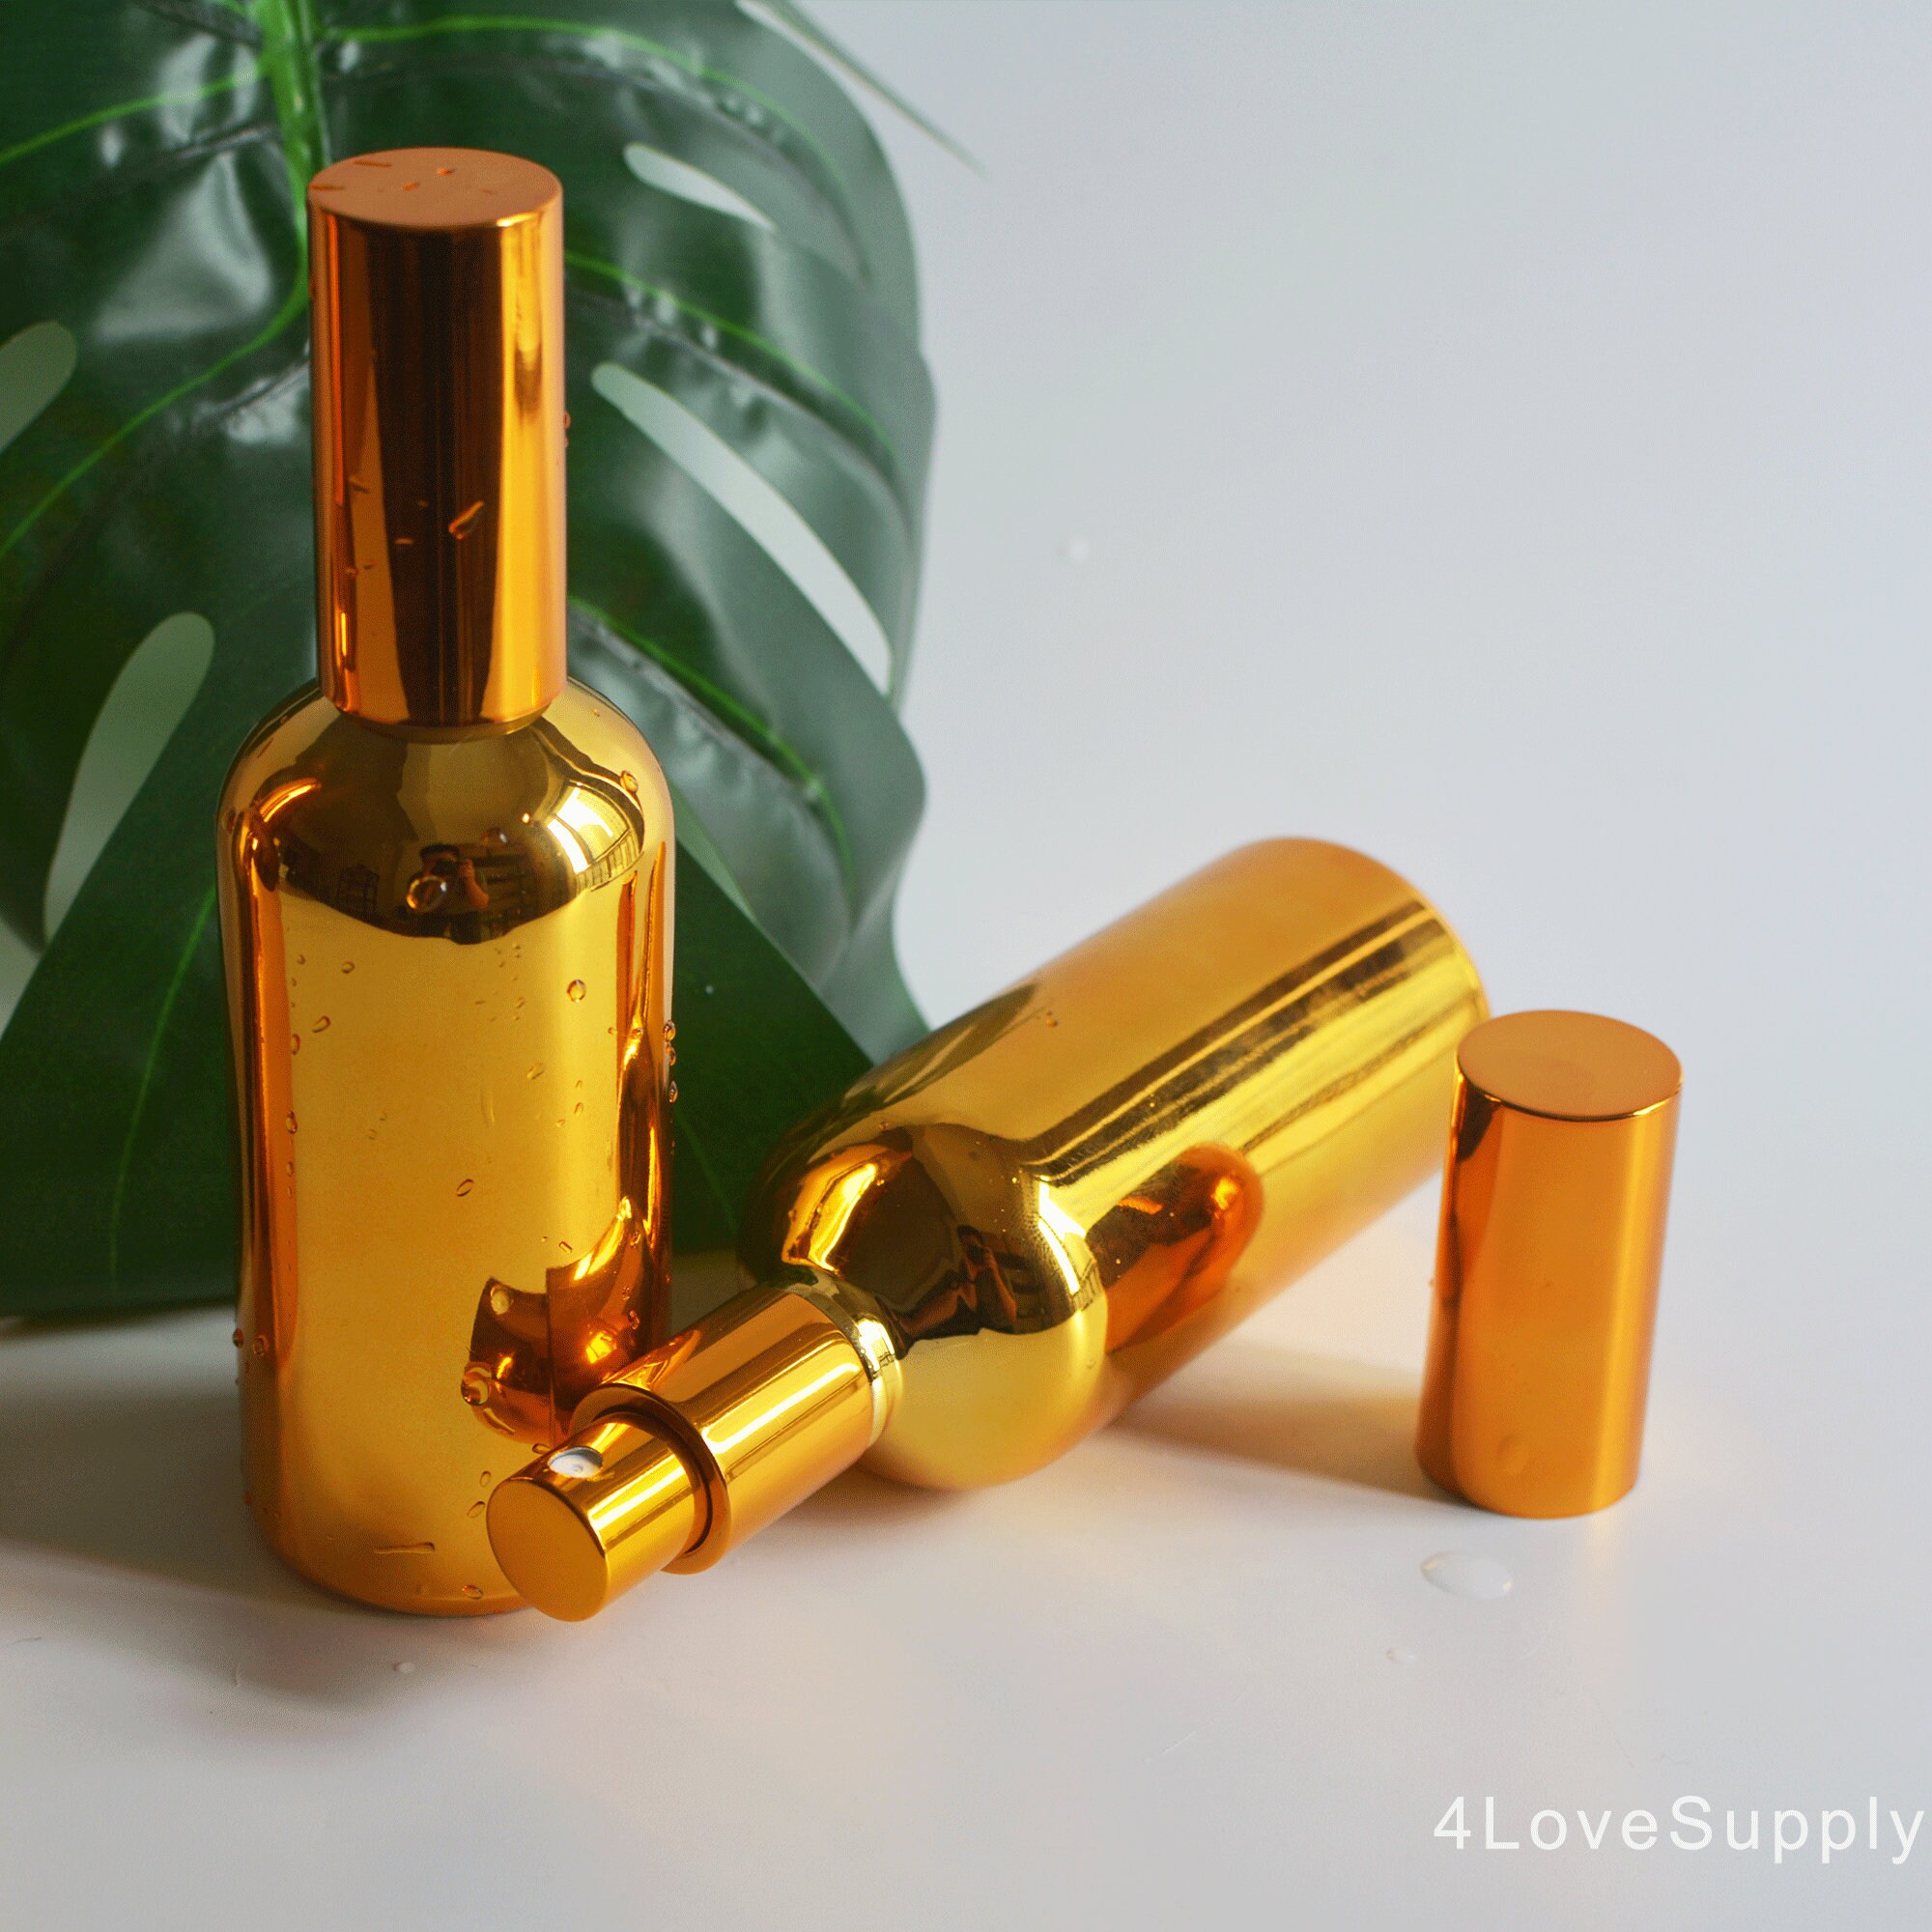 1-200 Stück Luxus Gold Beschichtung Feine Nebel Sprühflasche Glas  Ätherisches Öl Sprühflasche, Parfüm Duft Mister Home Room Spray, Großhandel  - .de